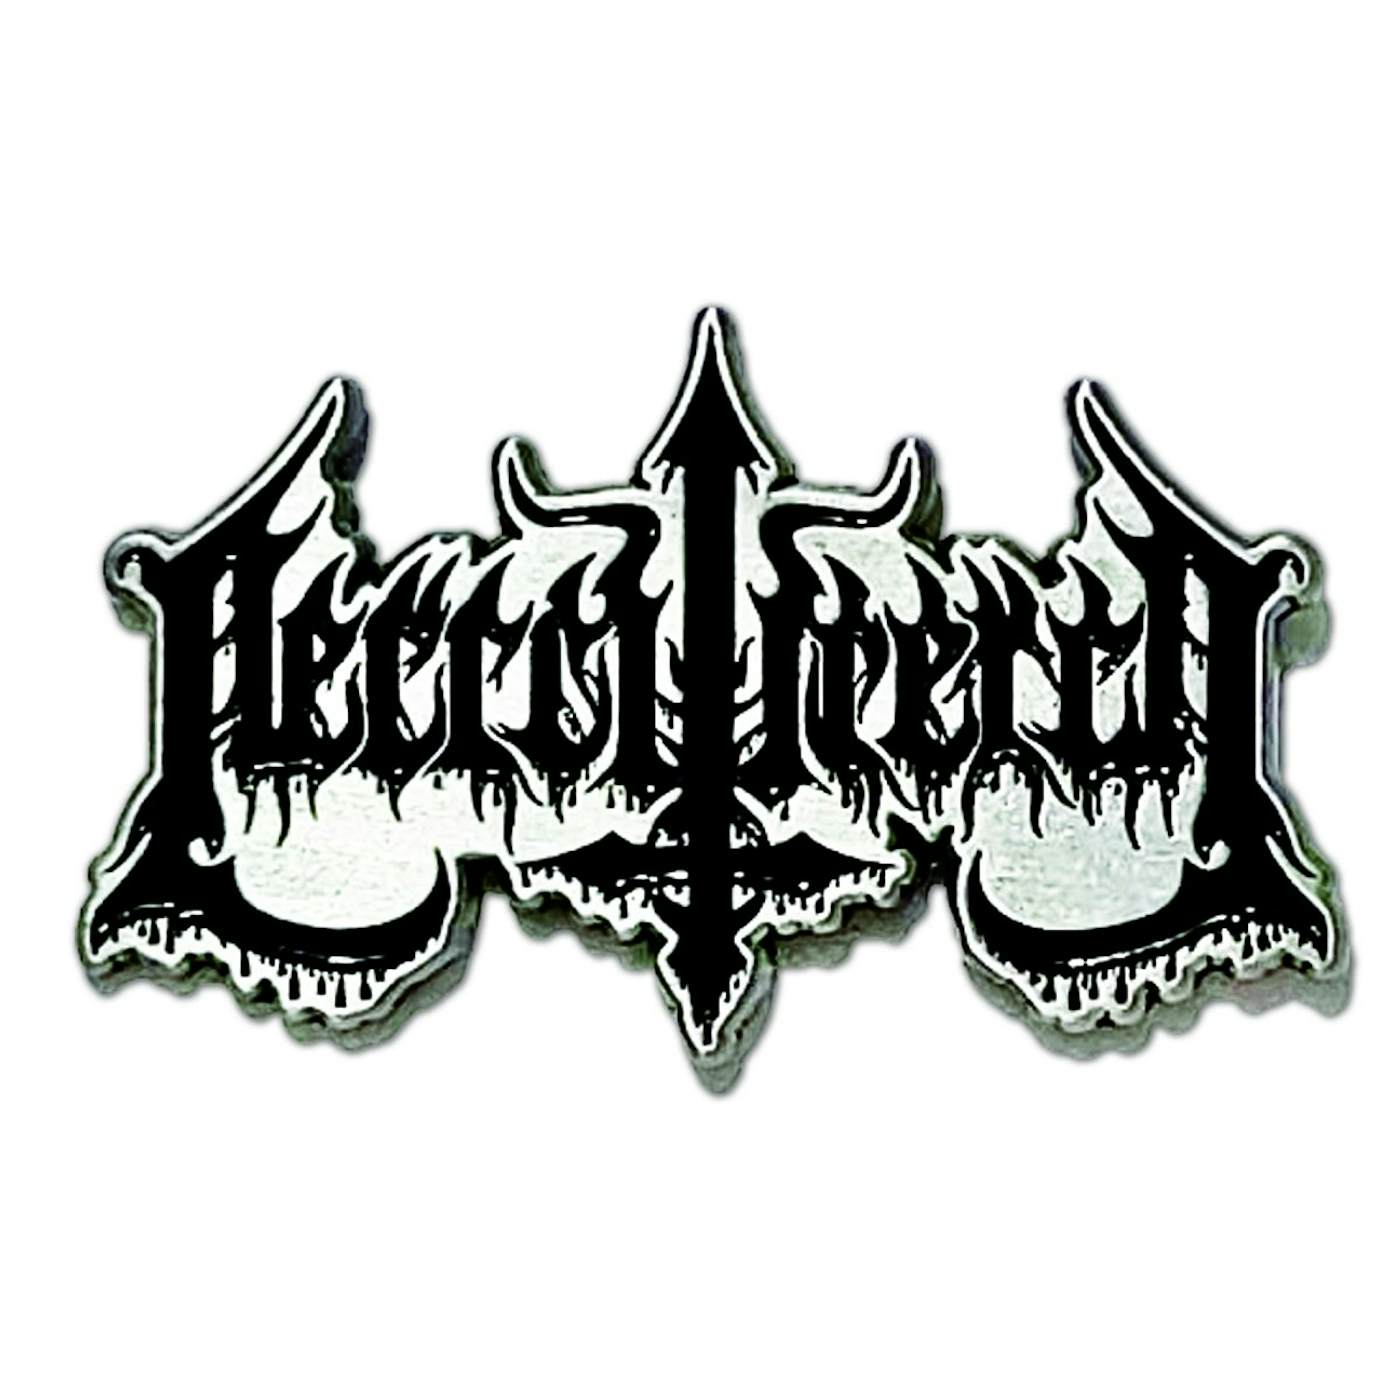 Necrowretch "Logo" Pins